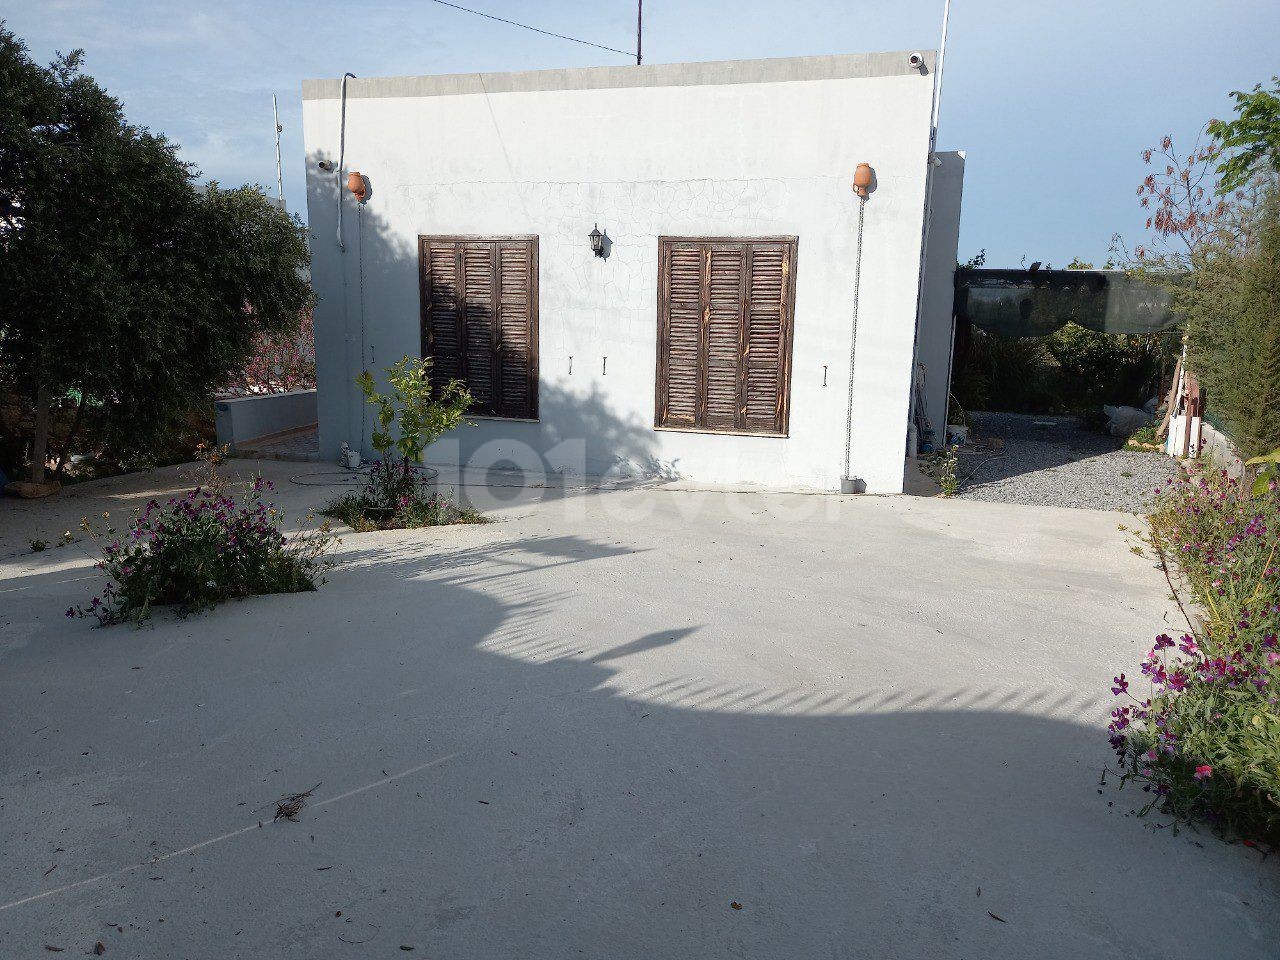 یک خانه 2+1 نوساز در محیطی دنج و آرام در روستای سپاهی به فروش می رسد.